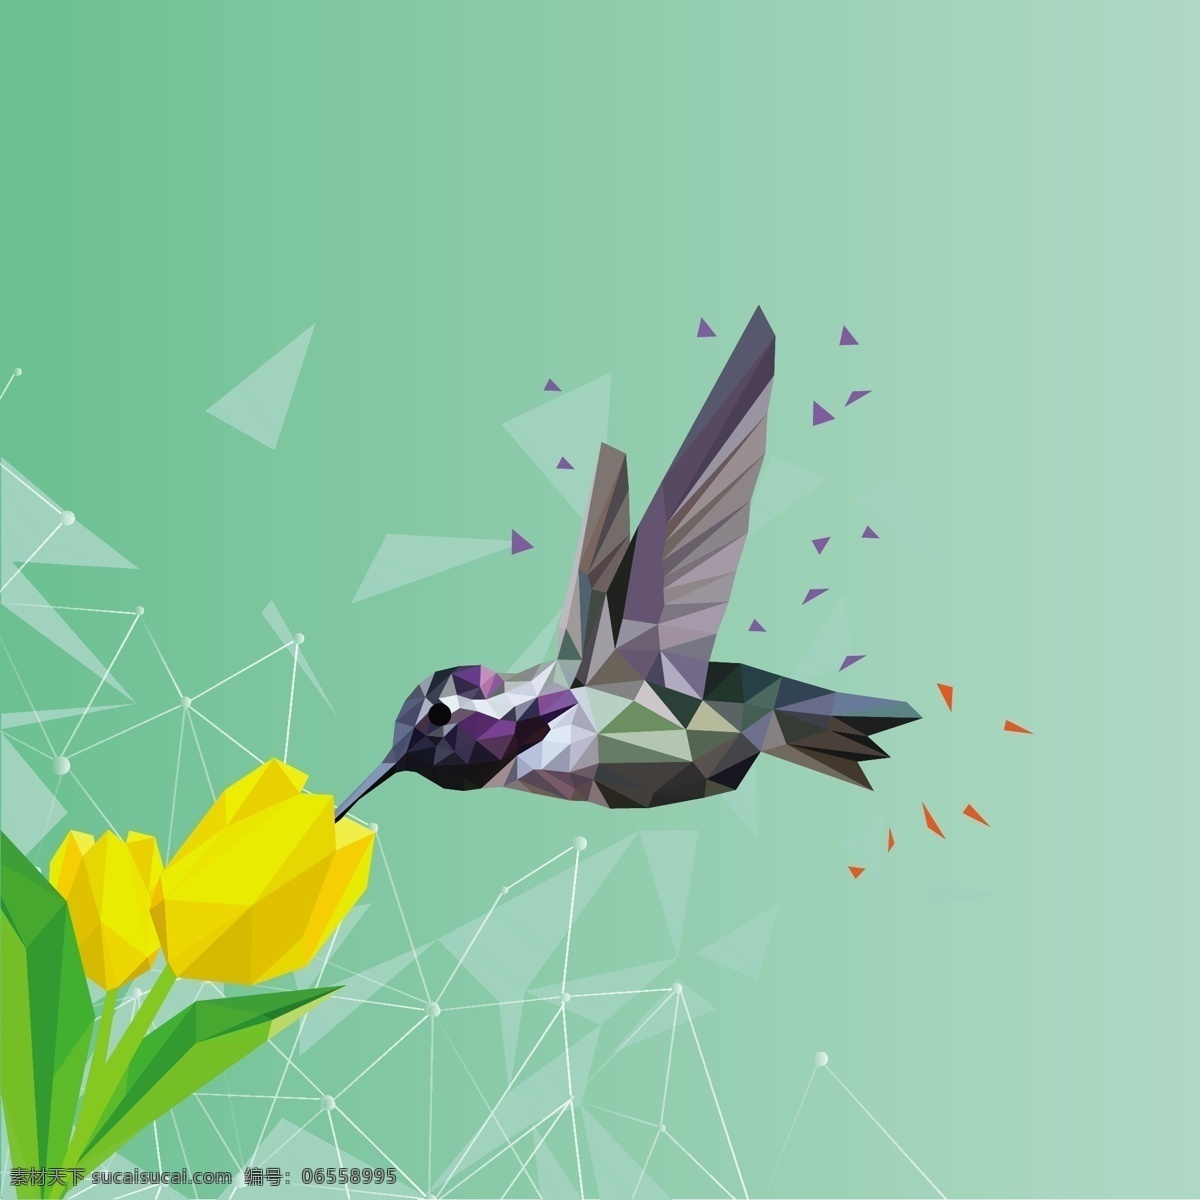 3d 几何图形 鸟 花 背景 图 广告背景 广告 背景素材 鲜花 郁金香 三角形 创意 绿色背景 漂亮 花卉 黄色花朵